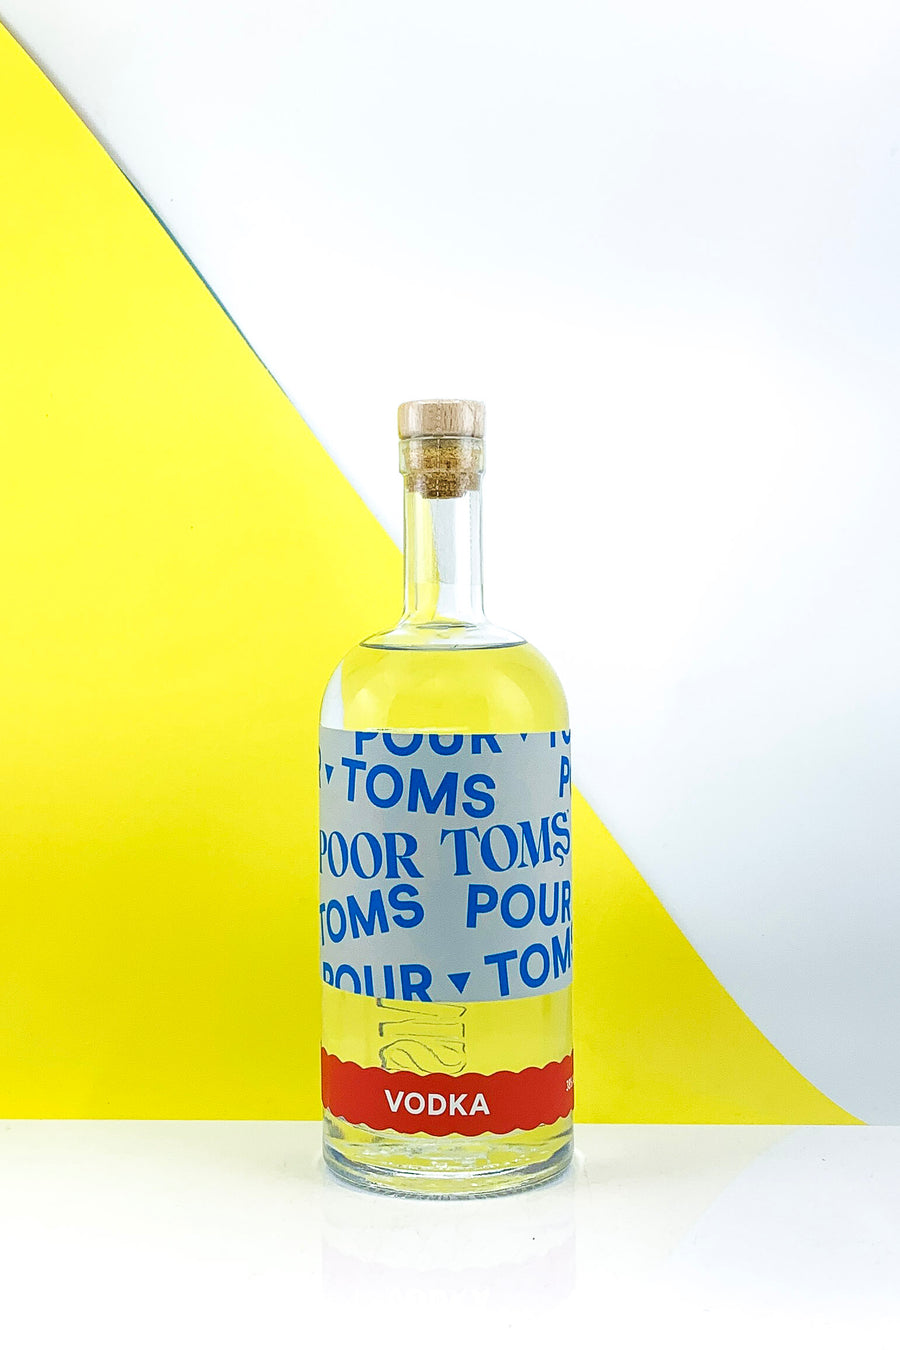 Poor Toms Vodka